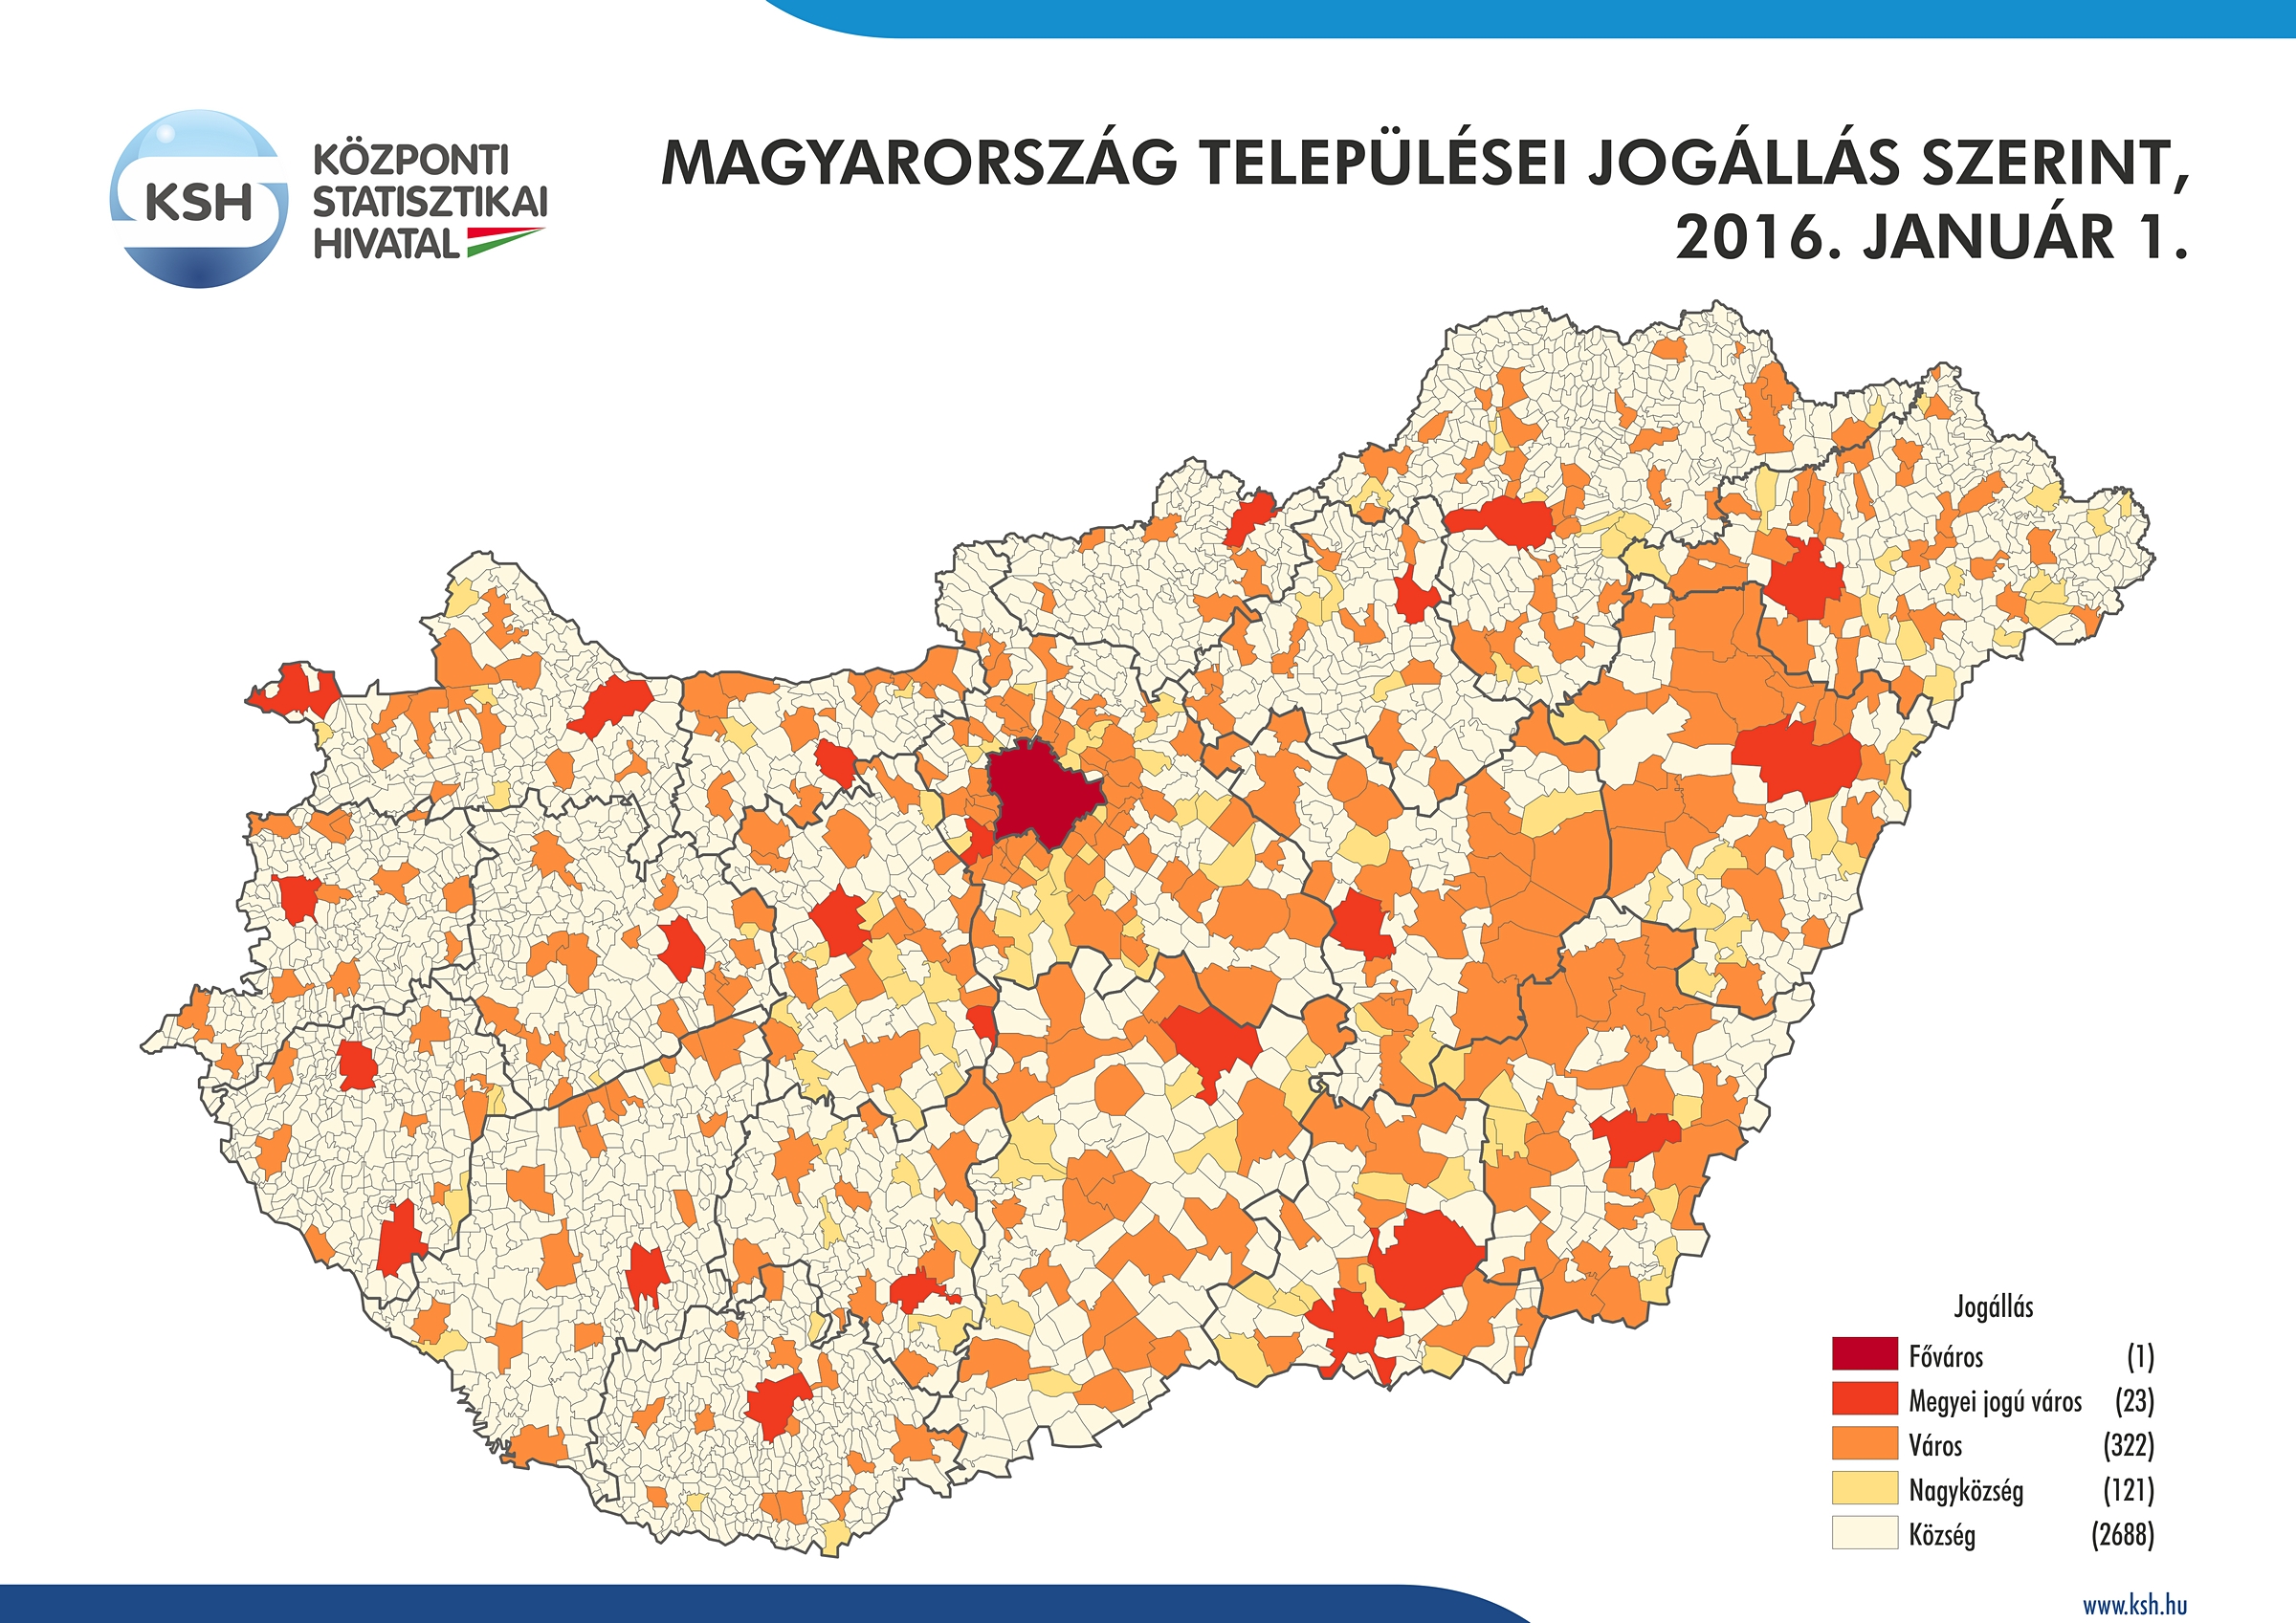 magyarország települései térkép Központi Statisztikai Hivatal magyarország települései térkép